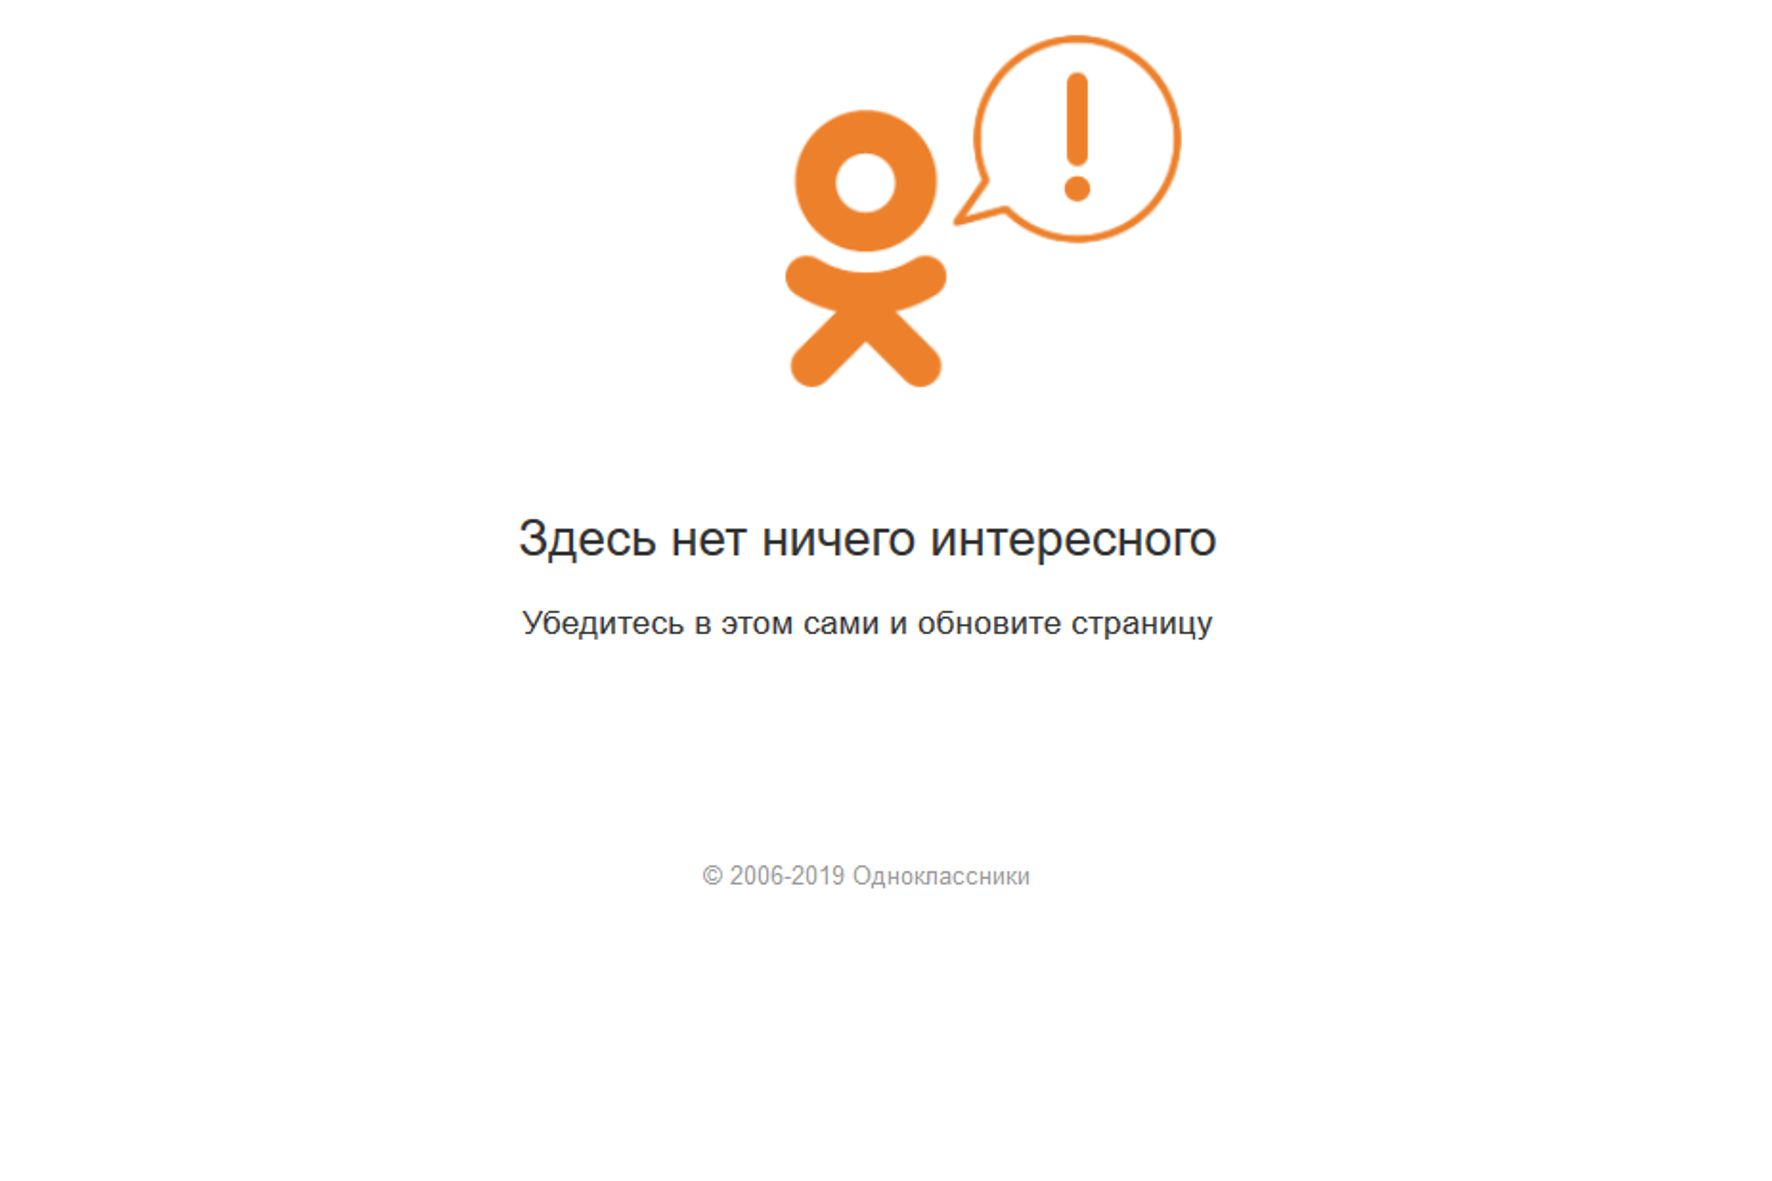 На сайте “Одноклассники» нет ничего интересного. Сайт временно не работает.